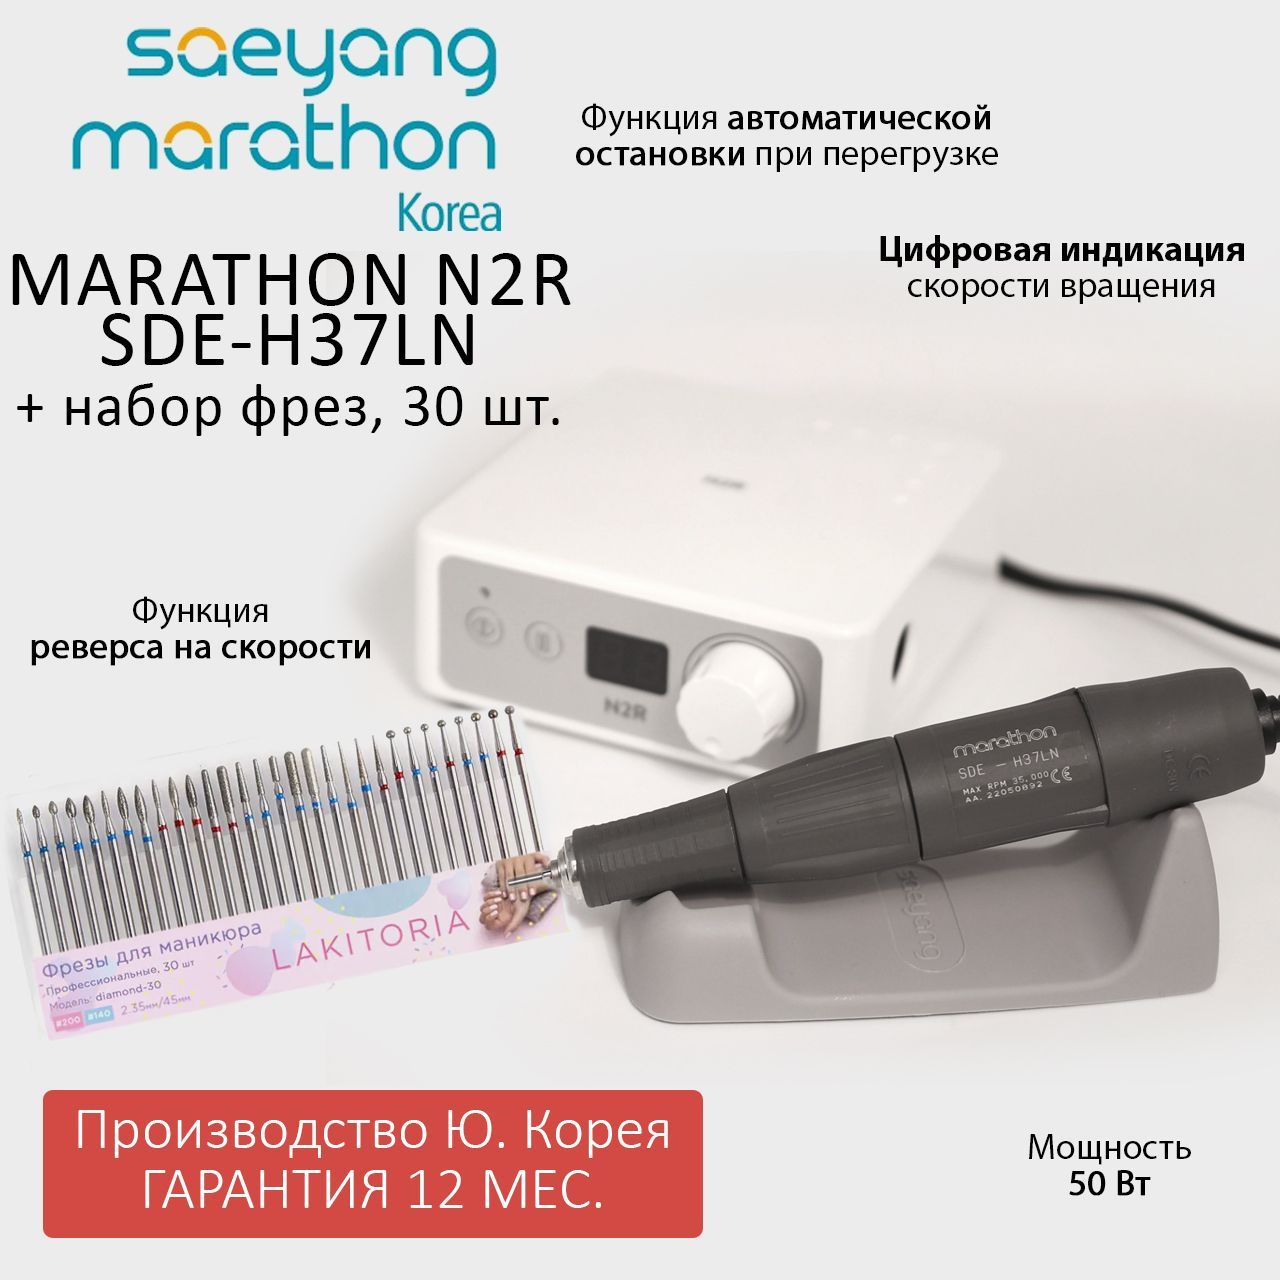 Аппарат для маникюра Marathon N2R SDE-H37LN без педали и набор фрез для маникюра 30шт алиса в русском зазеркалье последняя императрица россии